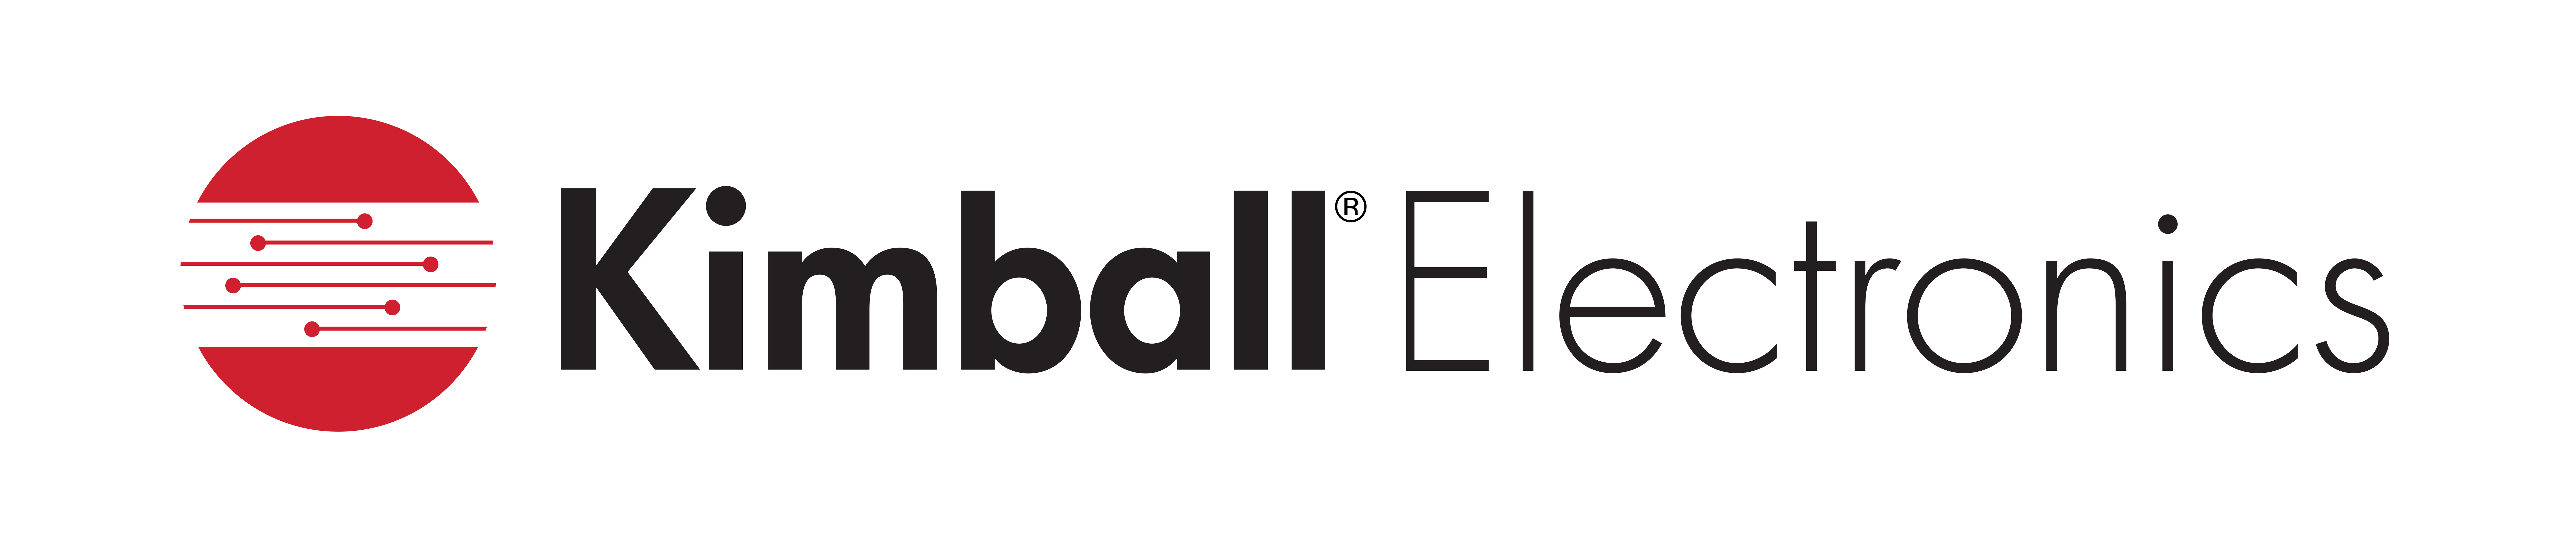 https://mms.businesswire.com/media/20211022005264/en/919087/5/Kimball_Electronics_Logo.jpg 